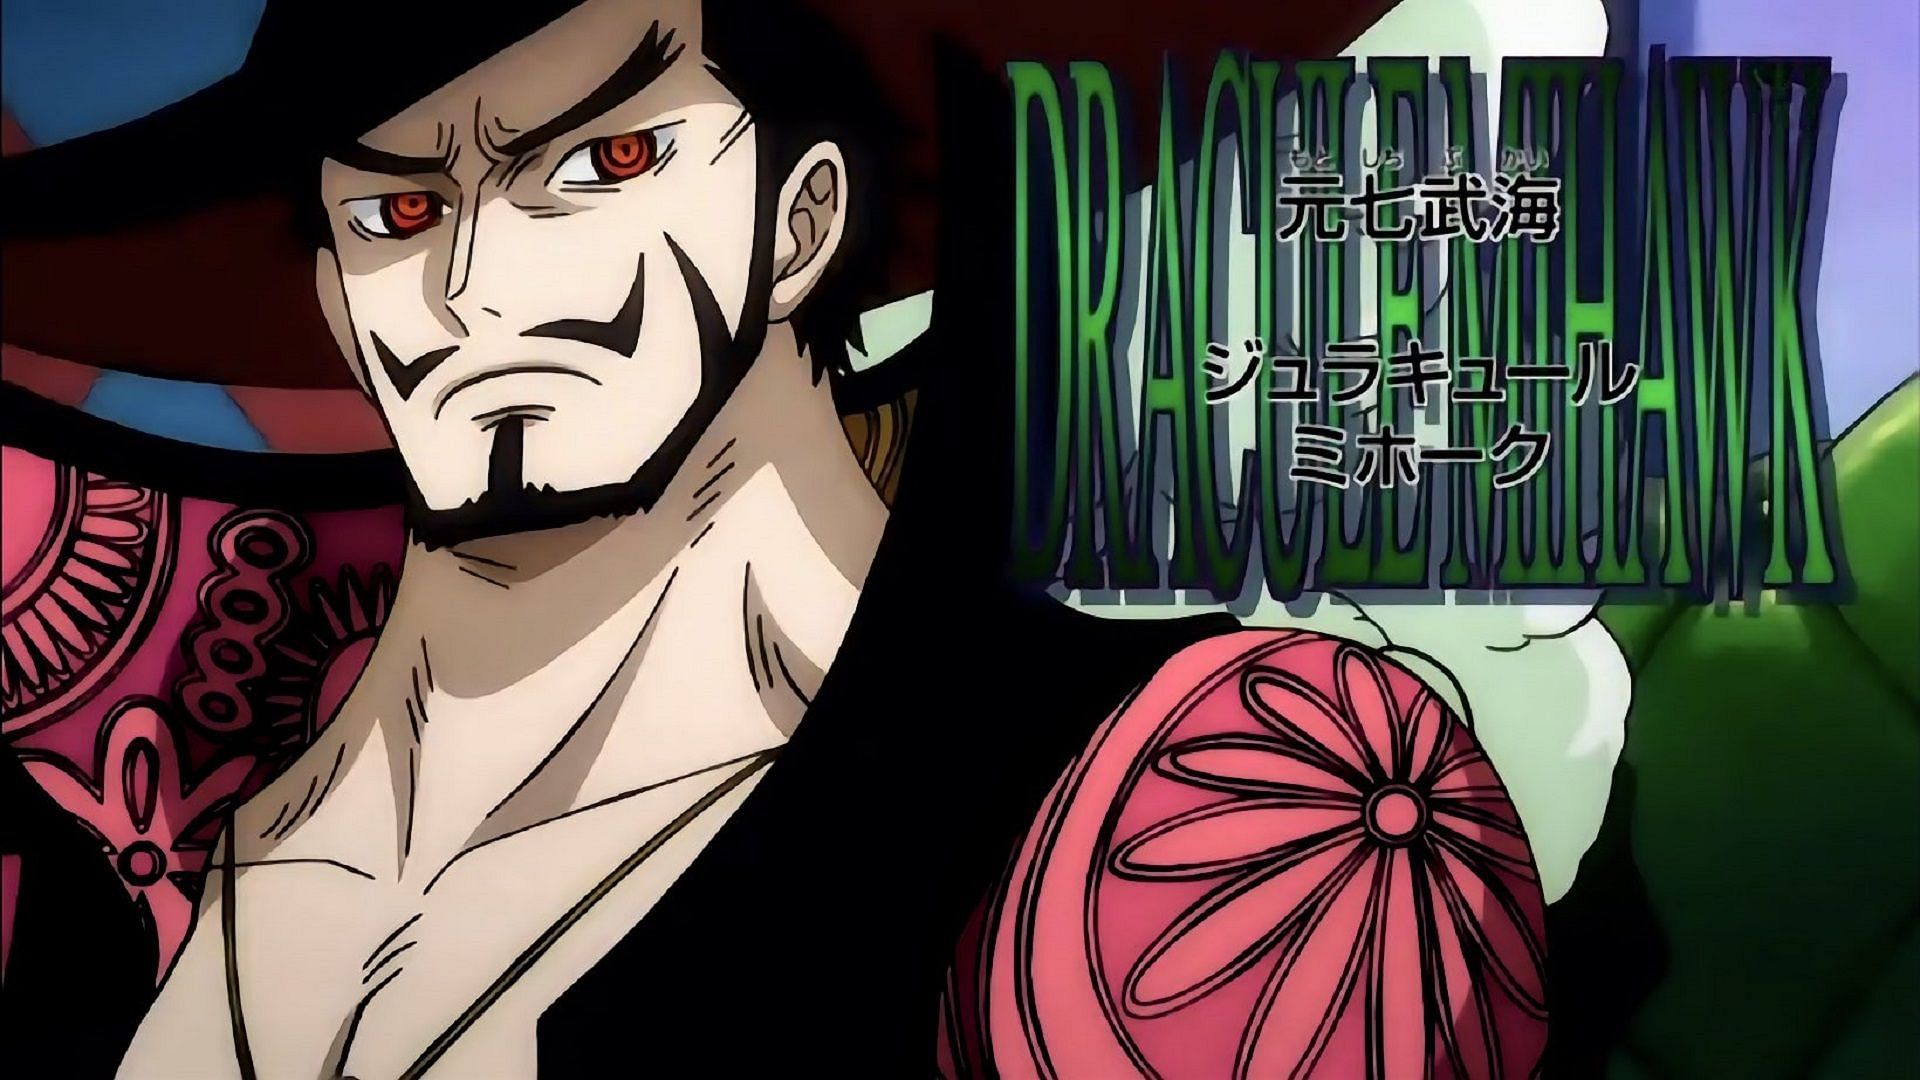 Dracule Mihawk as seen in One Piece (Image via Toei Animation)